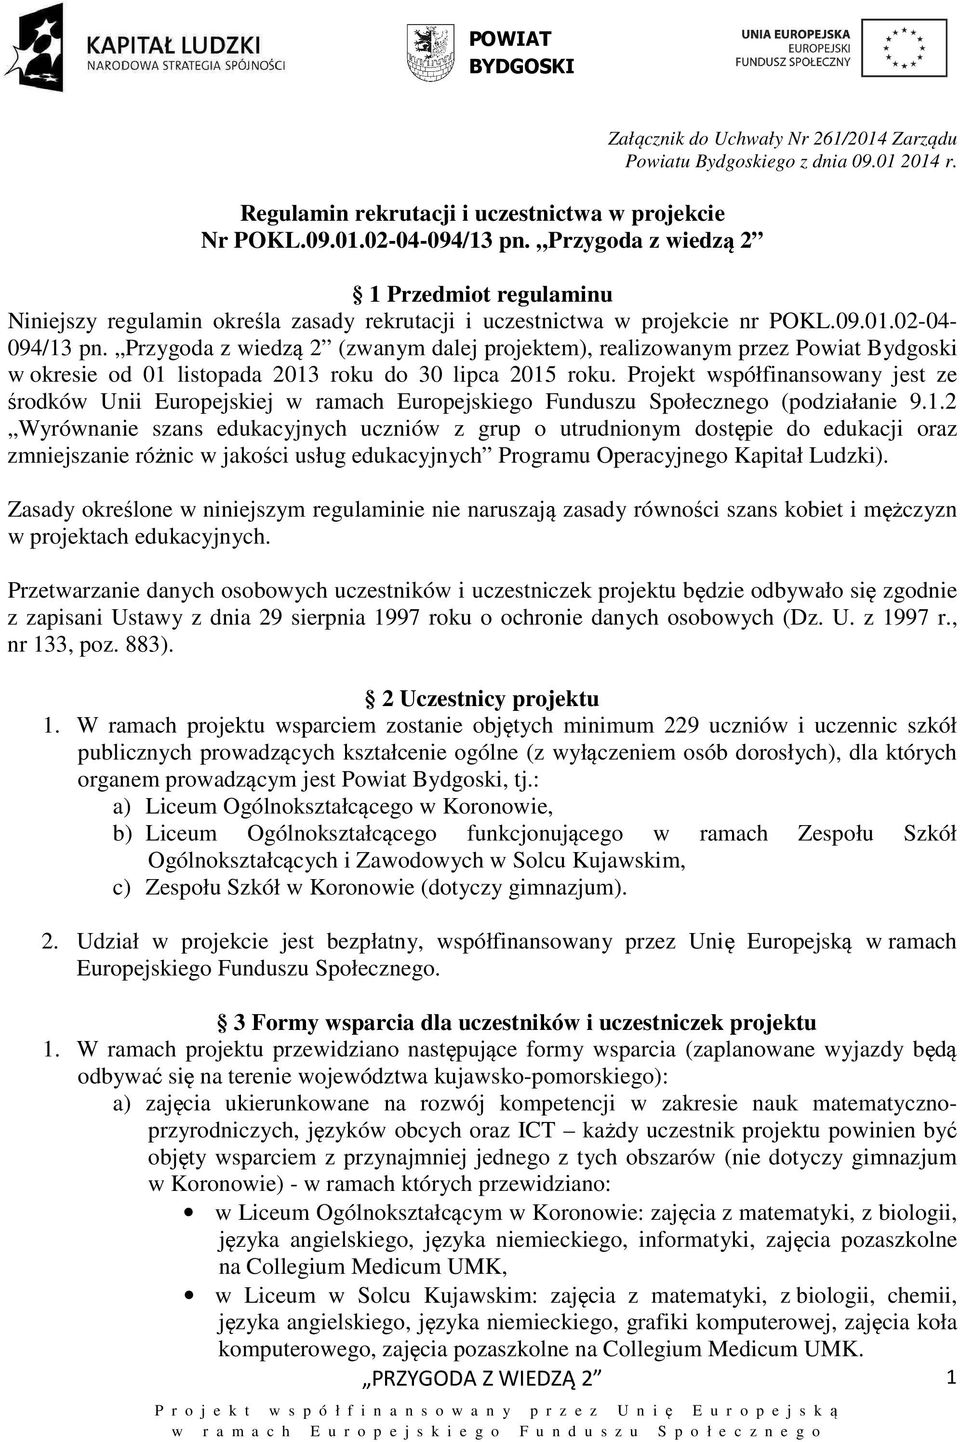 Przygoda z wiedzą 2 (zwanym dalej projektem), realizowanym przez Powiat Bydgoski w okresie od 01 listopada 2013 roku do 30 lipca 2015 roku.